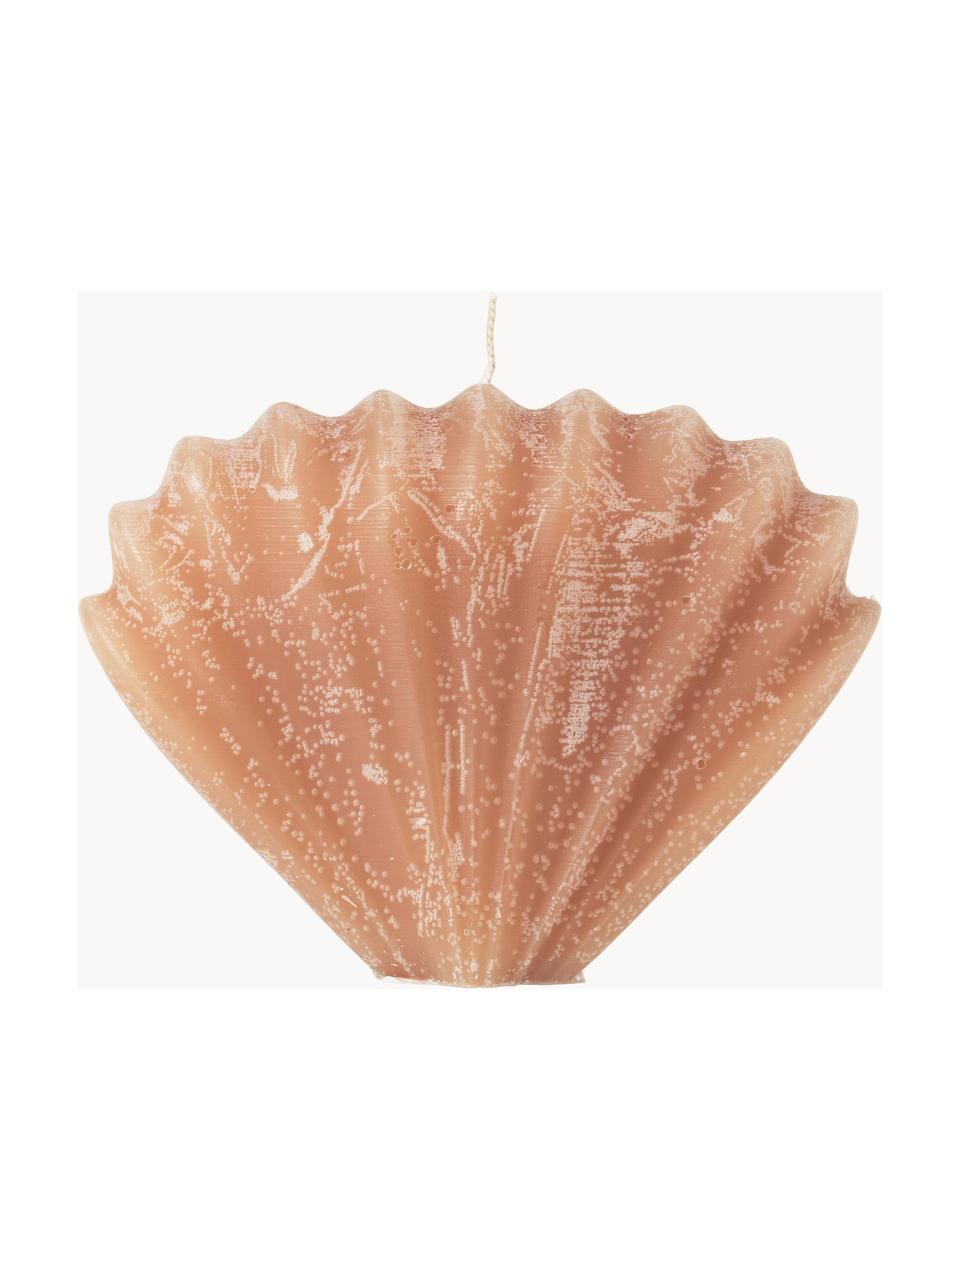 Handgemaakte kaars Seashell in schelp vorm, Paraffine, Oranje, B 15 x H 10 cm